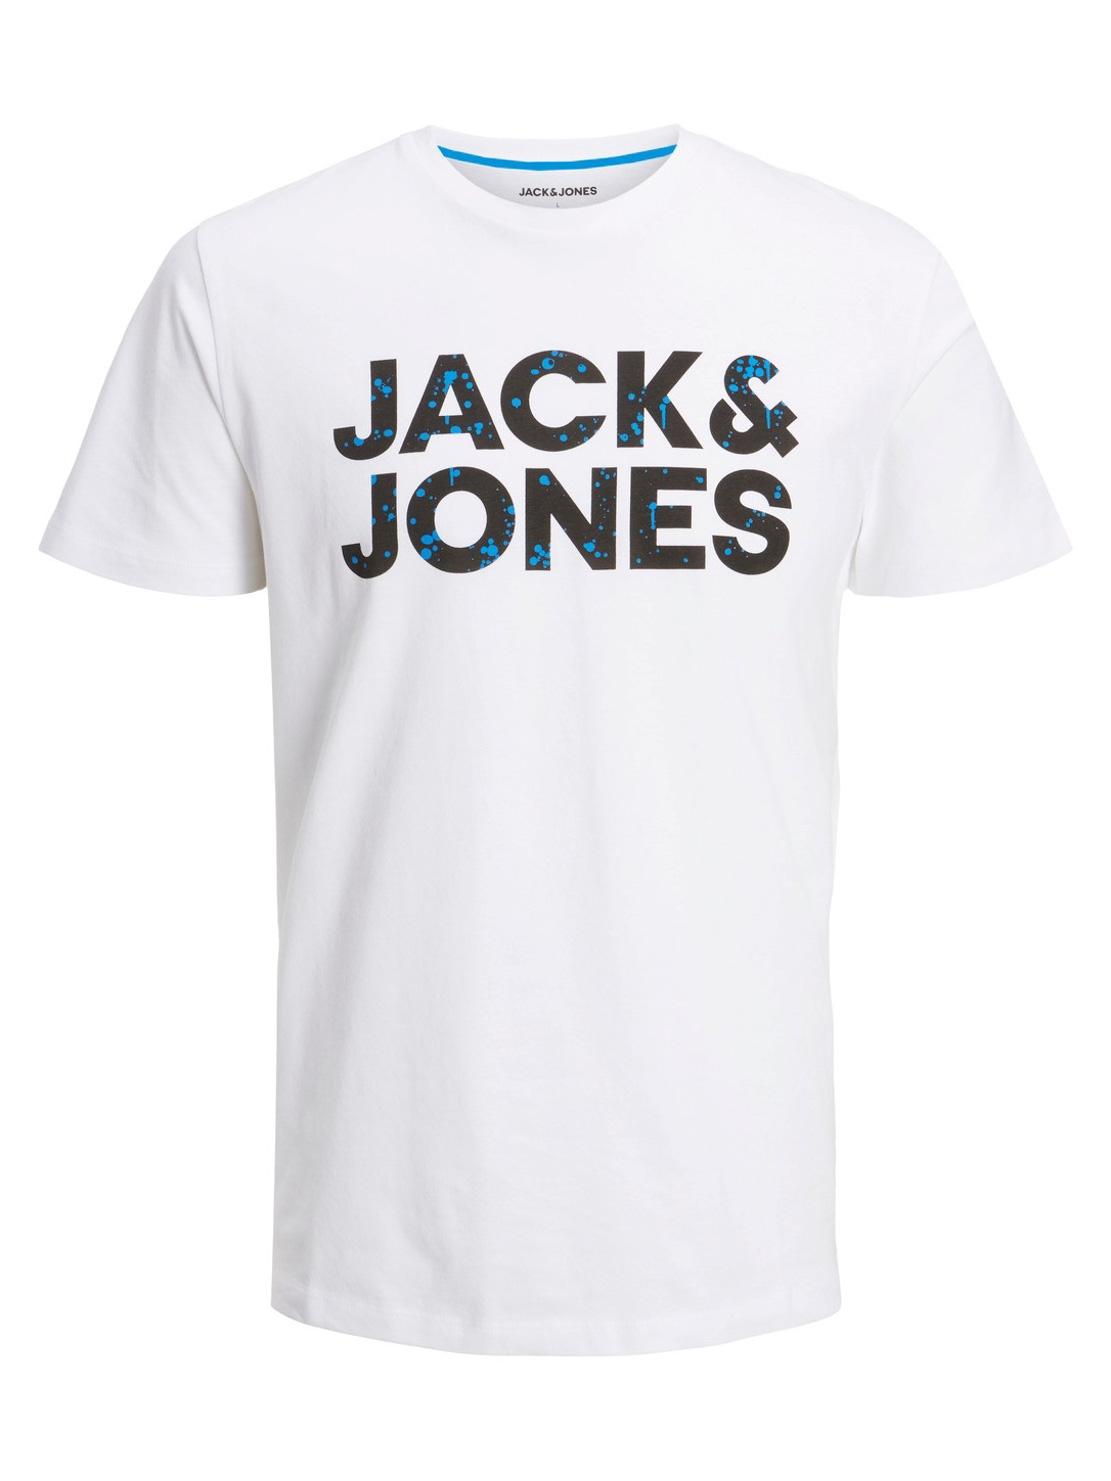 Camiseta Jack And Jones Neon Pop Blanca Hombre